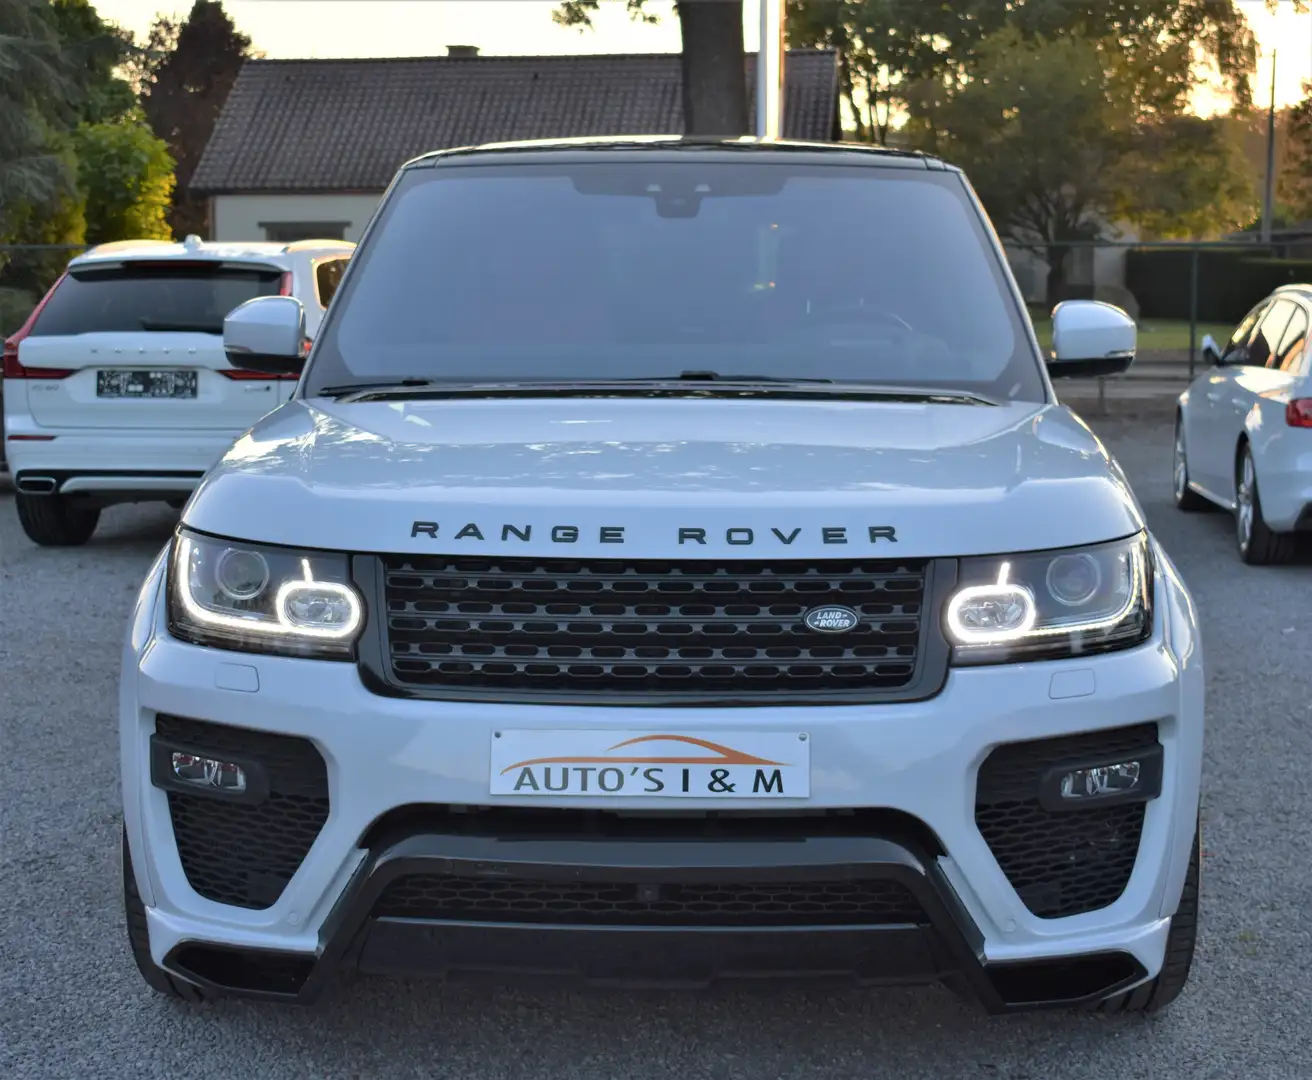 Land Rover Range Rover SUV/4x4/Pick-up Wit in Hechtel-Eksel voor € 65.999,-